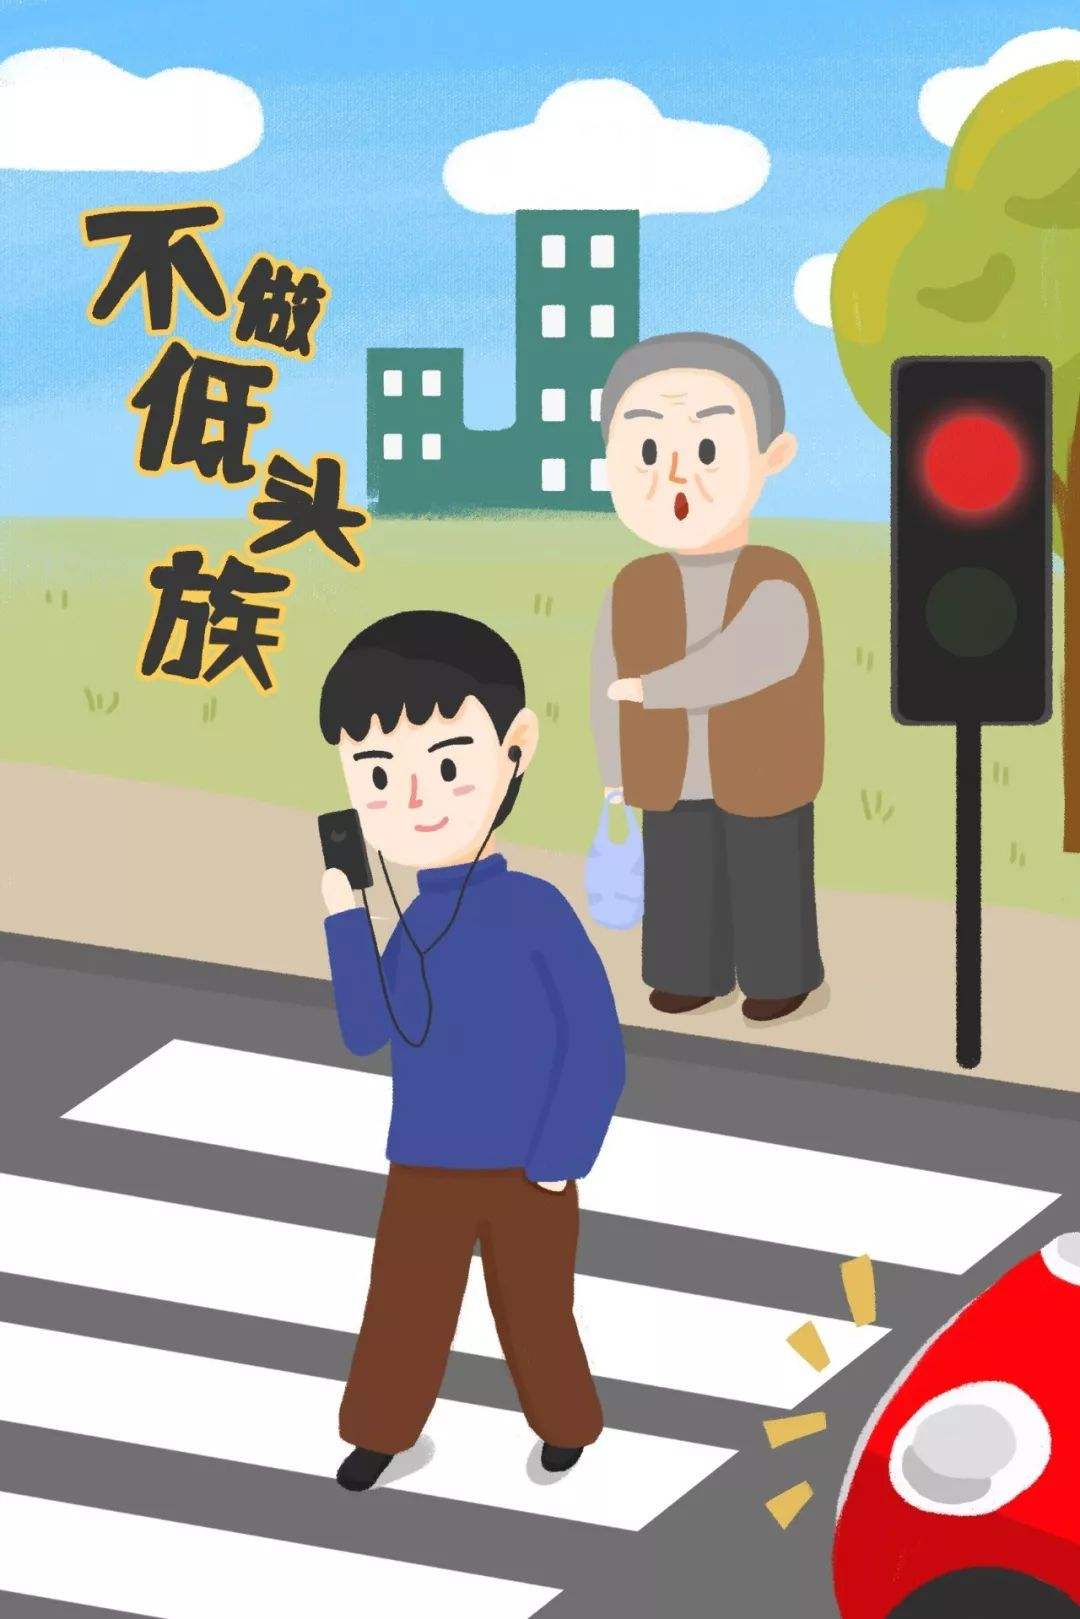 道路交通标志线(「中华人民共和国道路交通安全法第三章」交通信号灯、标志、标线)